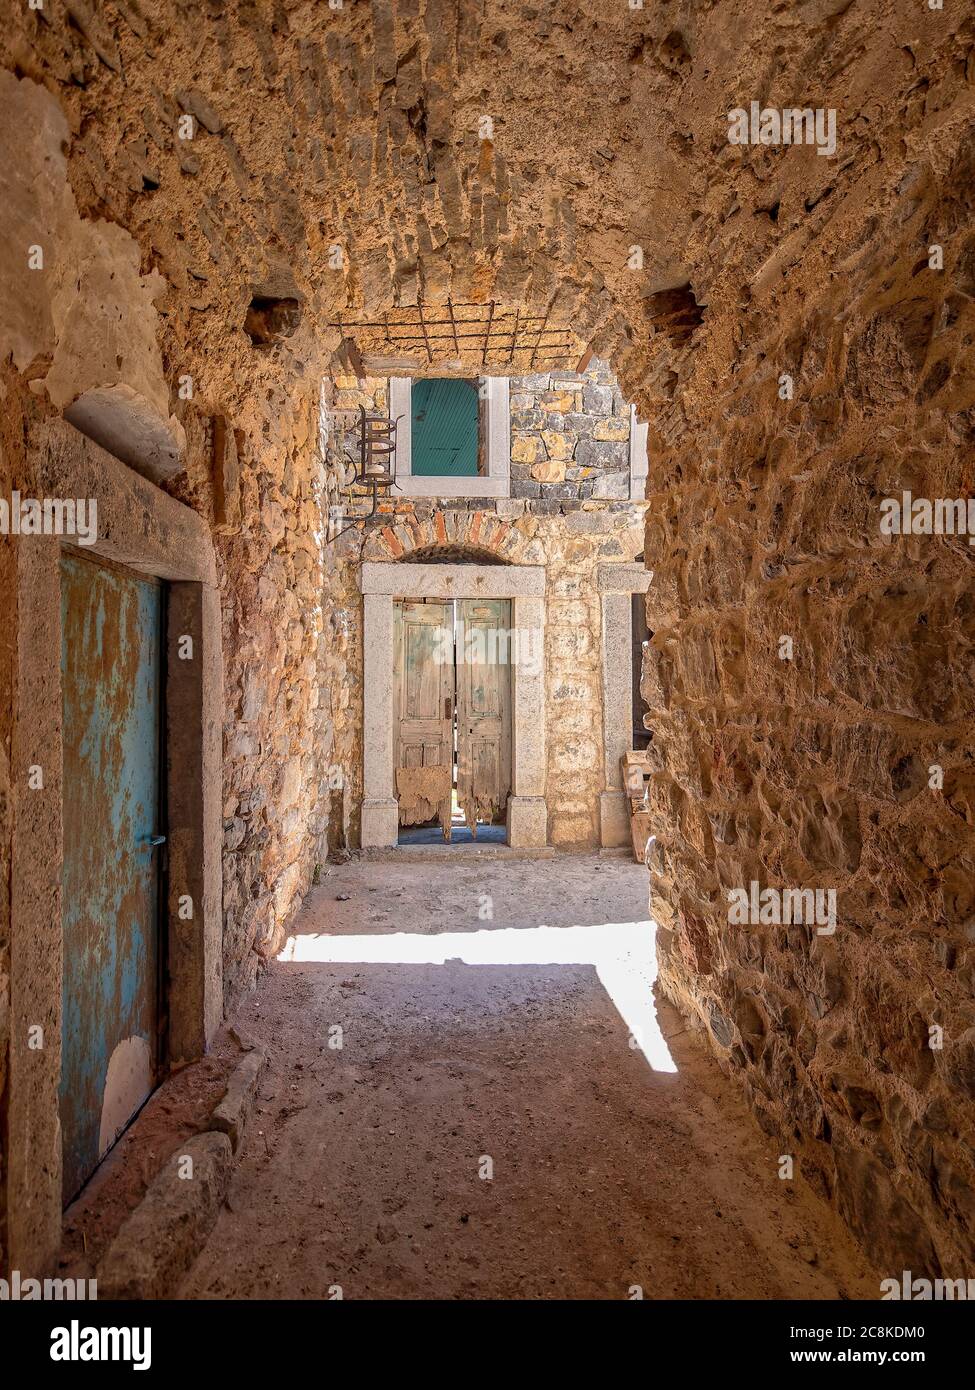 Entouré de pierre. Une petite tache de soleil éblouissante et une porte abîmé au bout d'une allée voûtée dans la ville médiévale de Pyrgi, île de Chios, Grèce. Banque D'Images